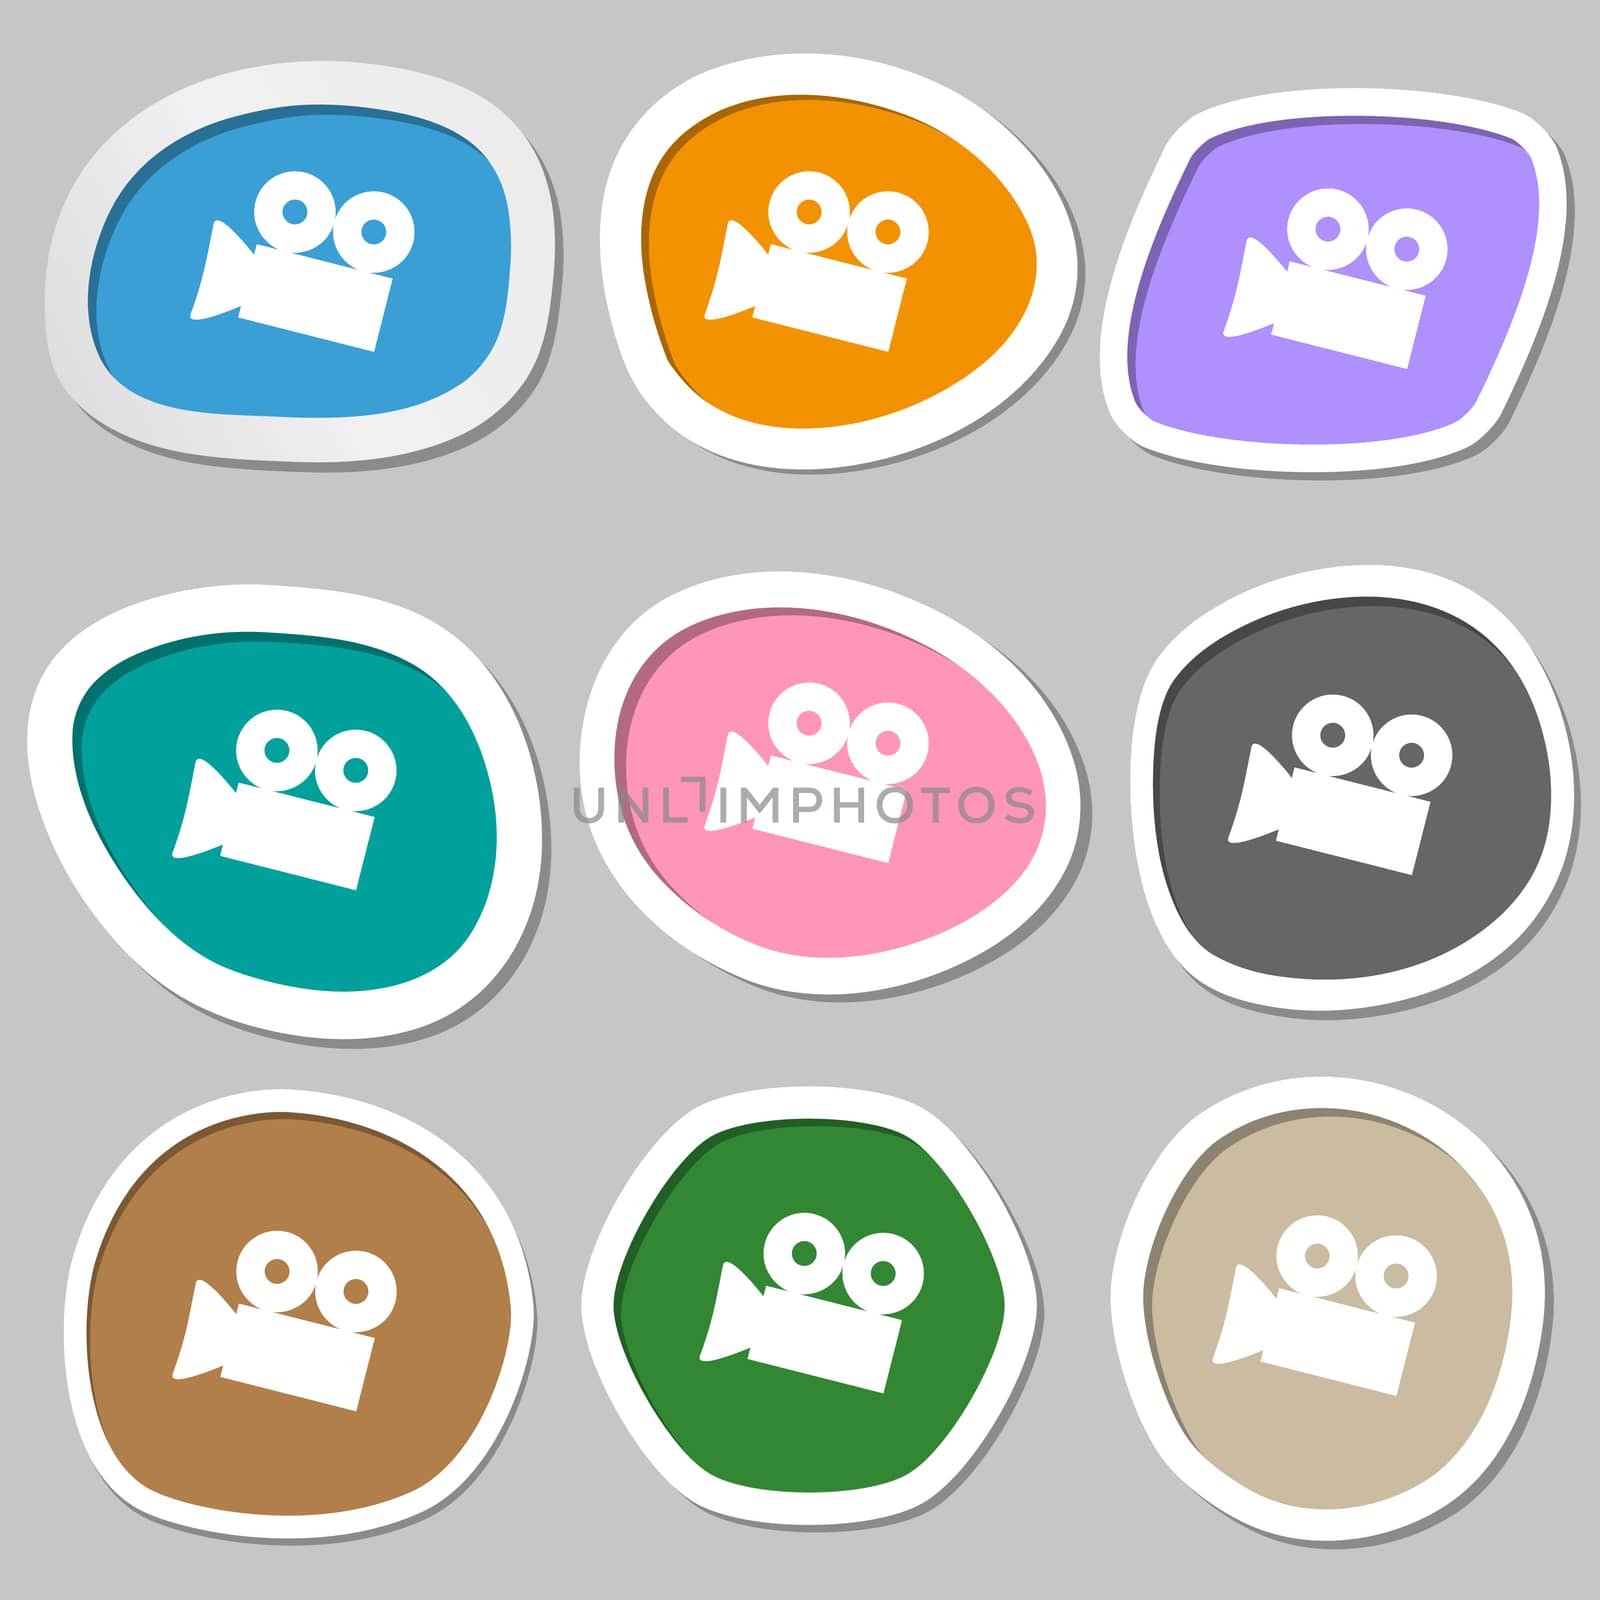 Video camera sign icon. content button. Multicolored paper stickers. illustration